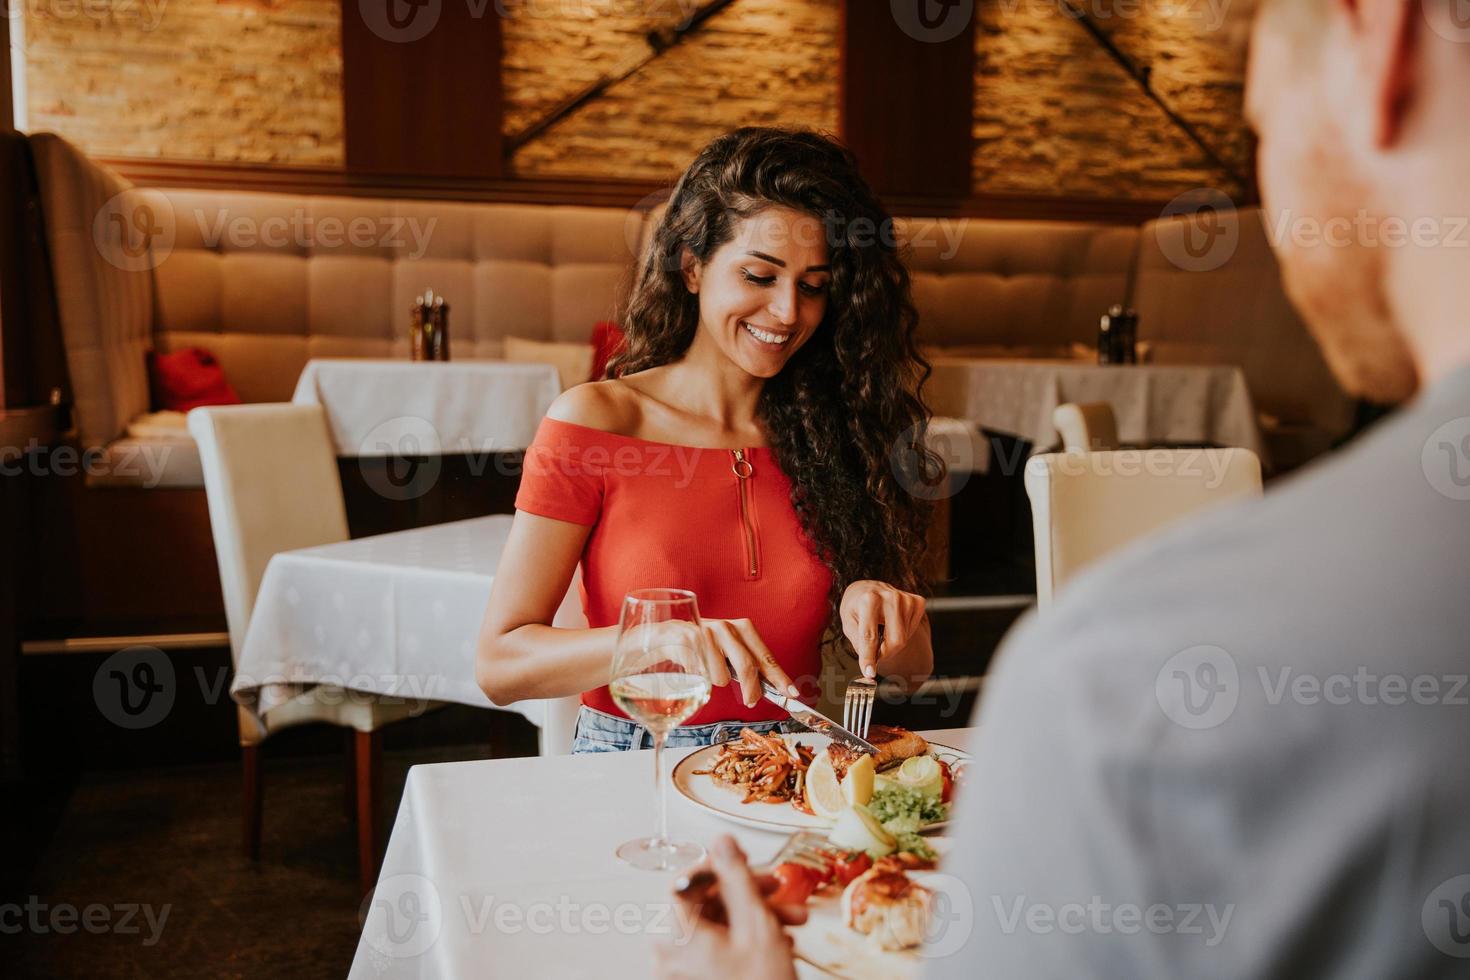 jovem casal almoçando com vinho branco no restaurante foto